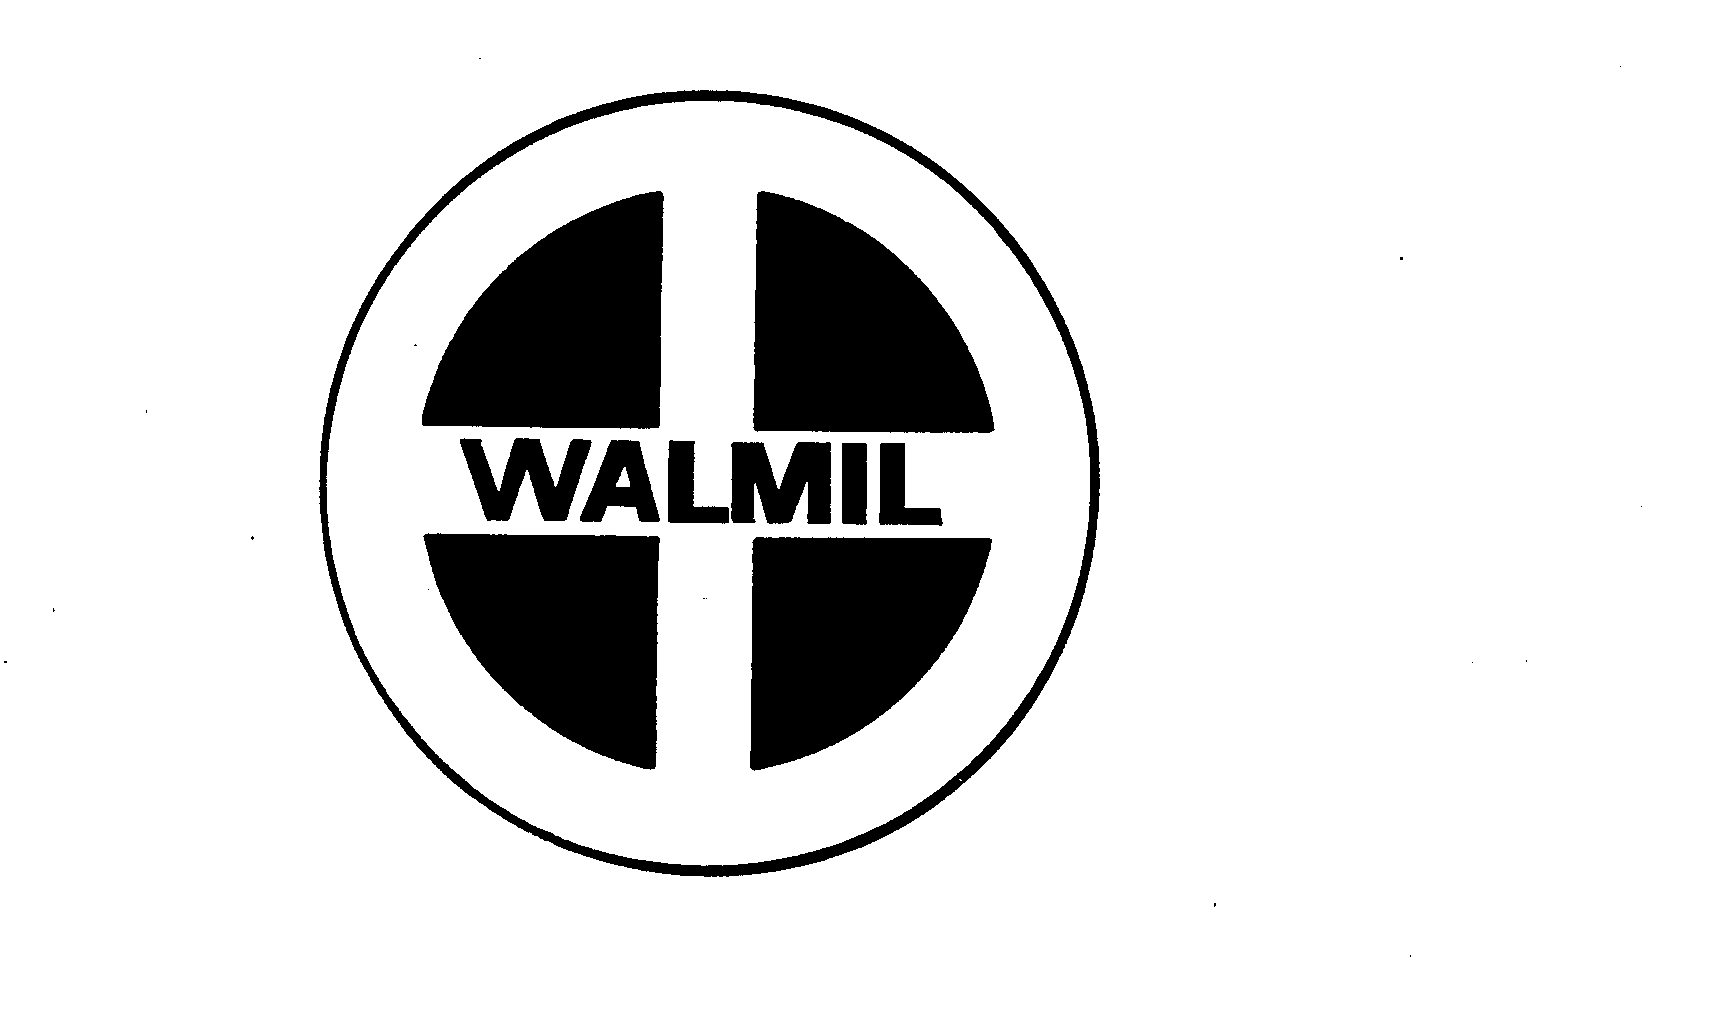  WALMIL